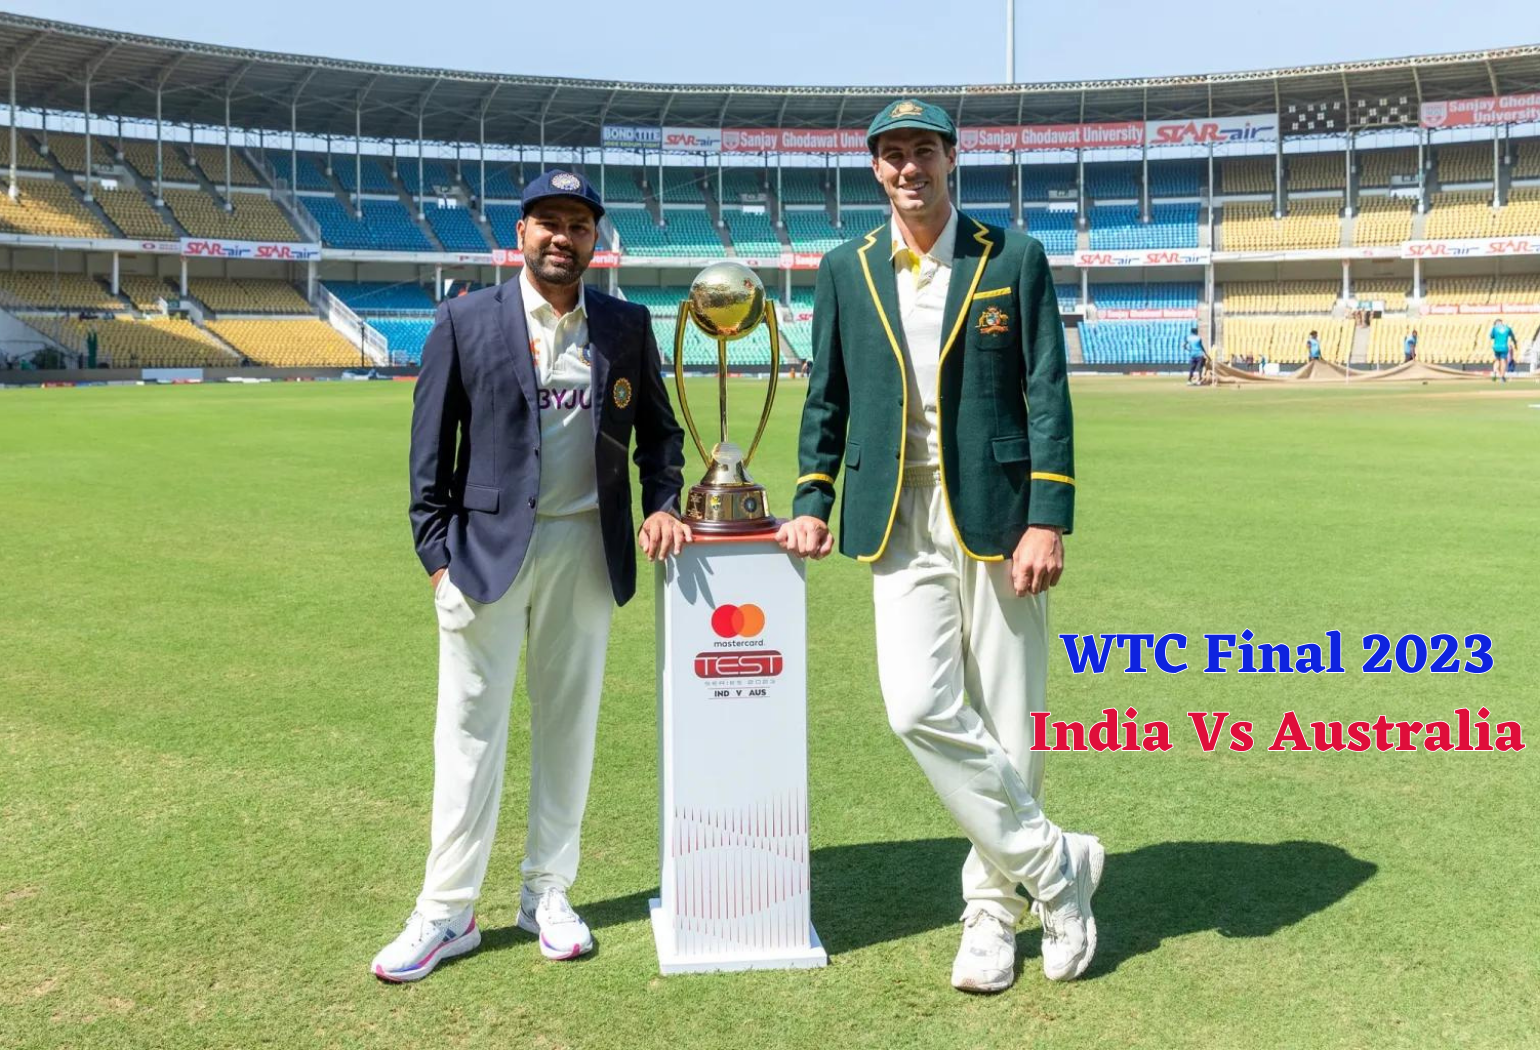 WTC Final 2023 India Vs Australia